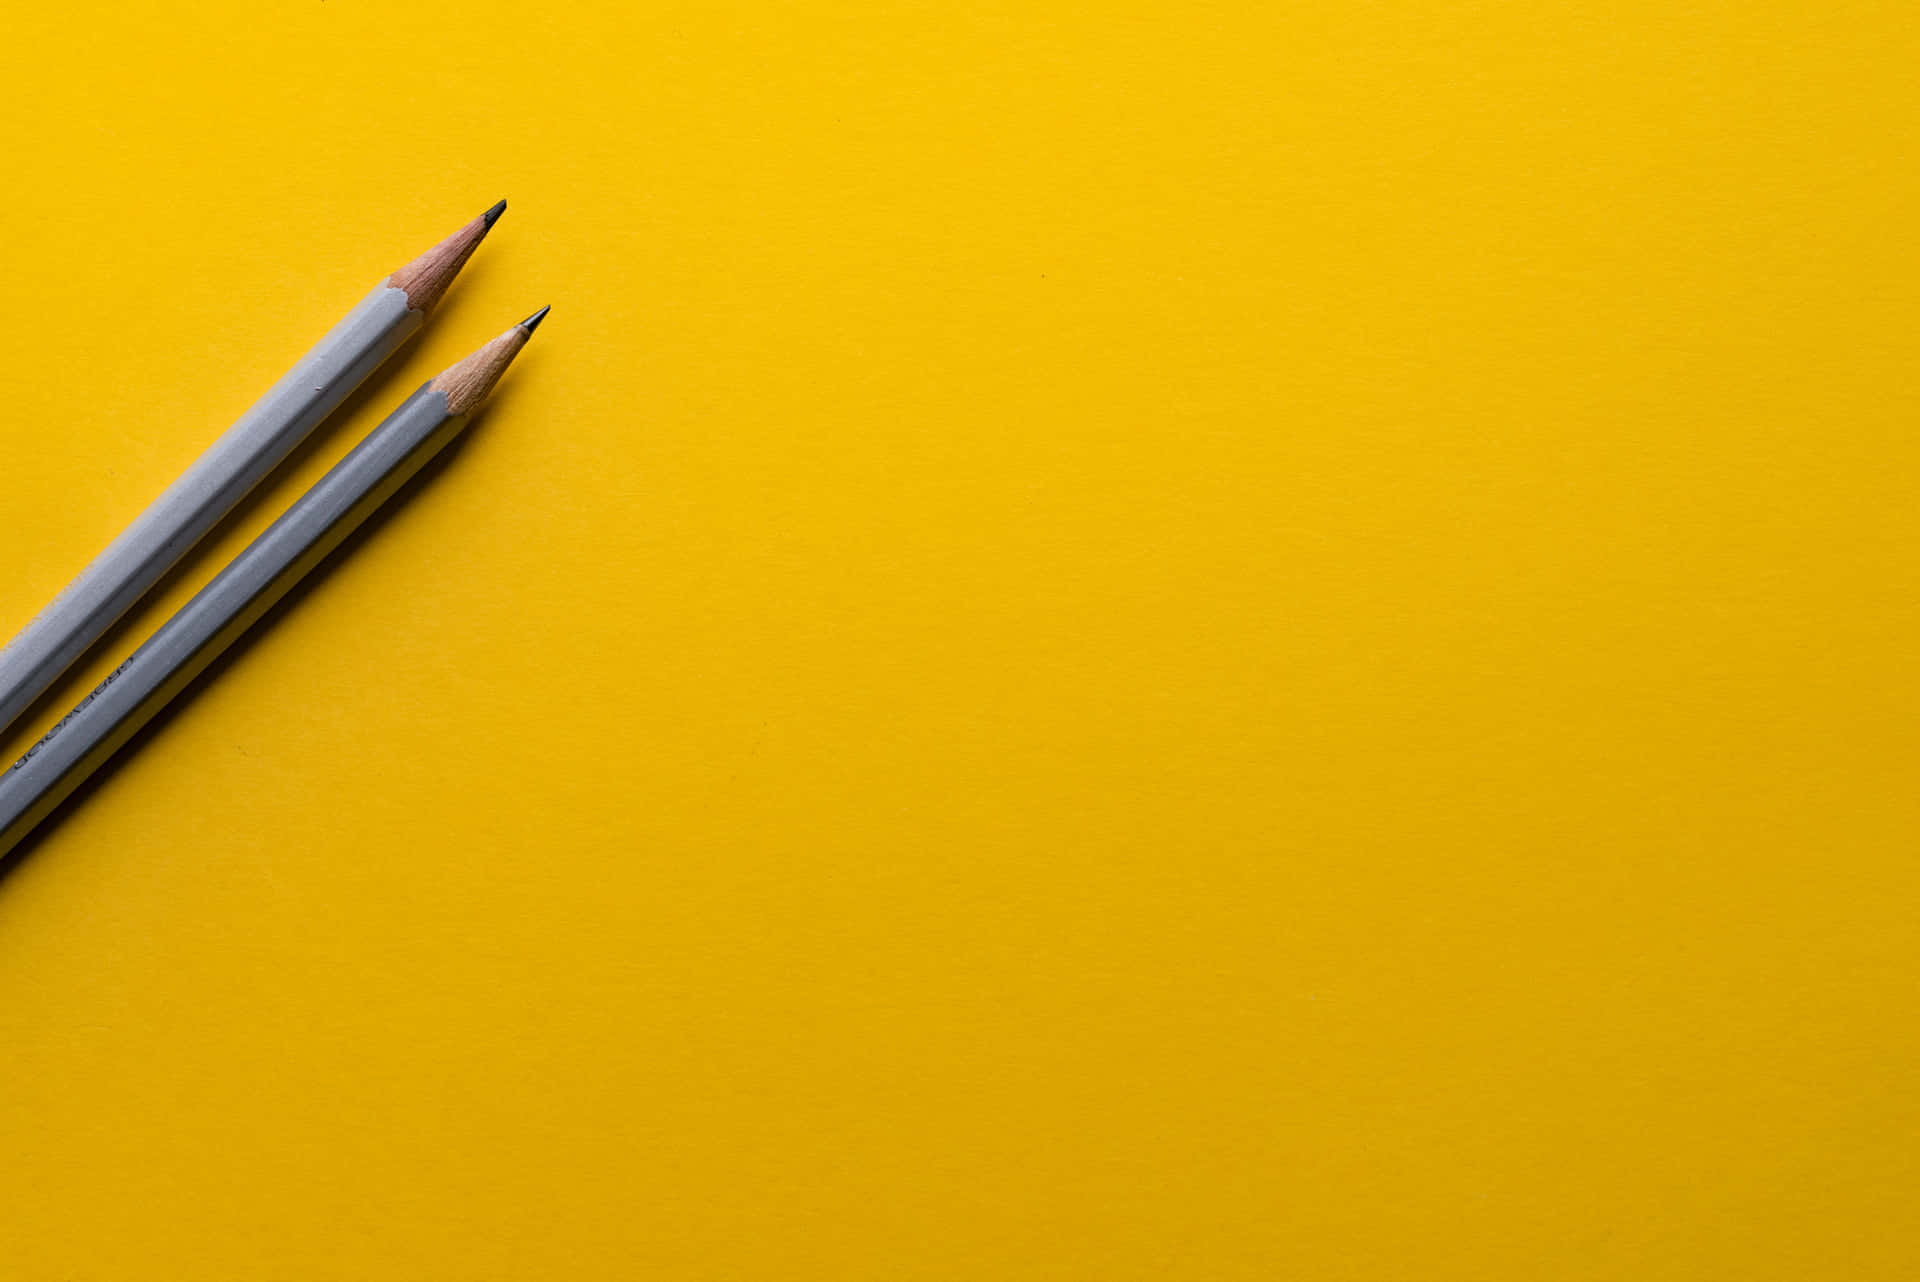 Zweigraue Bleistifte Auf Gelbem Tisch-hintergrund.